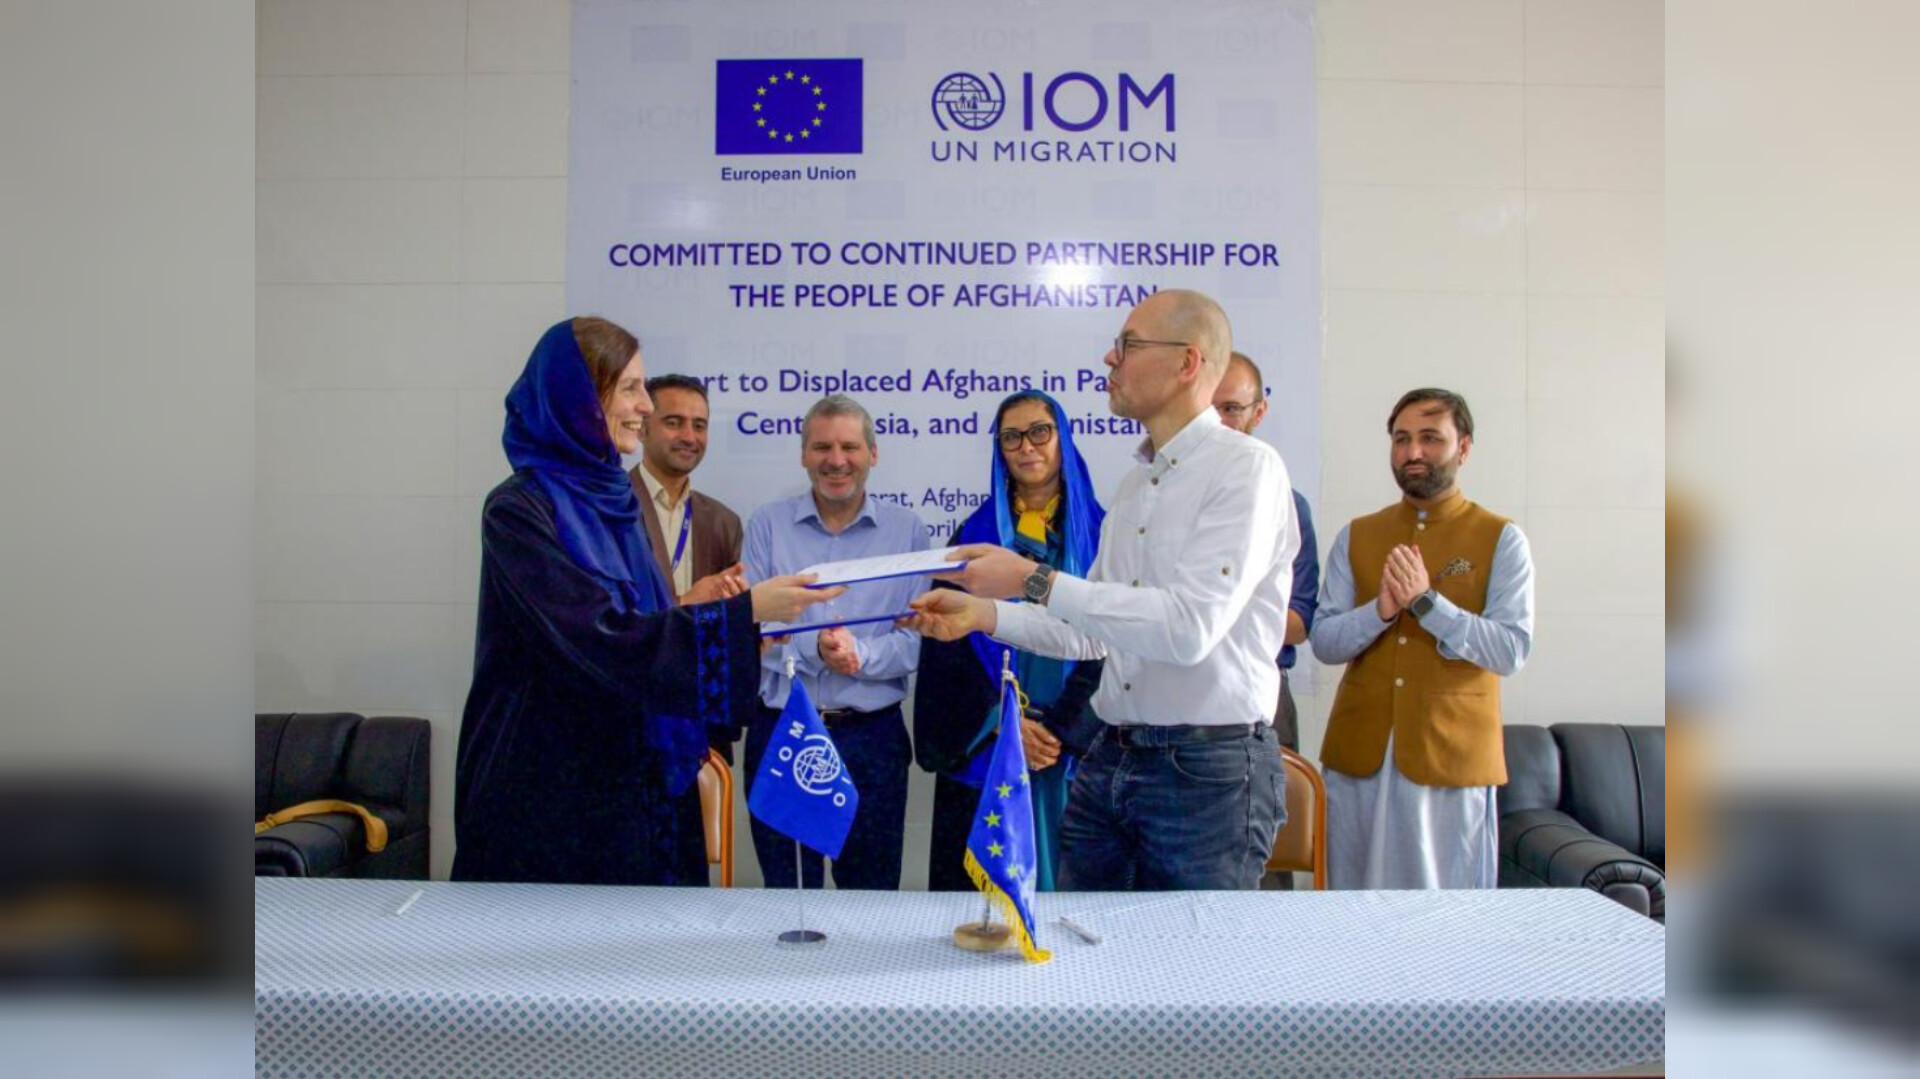 اتحادیه اروپا برای حمایت از مهاجرین افغان ۱۷ میلیون یورو اختصاص داد